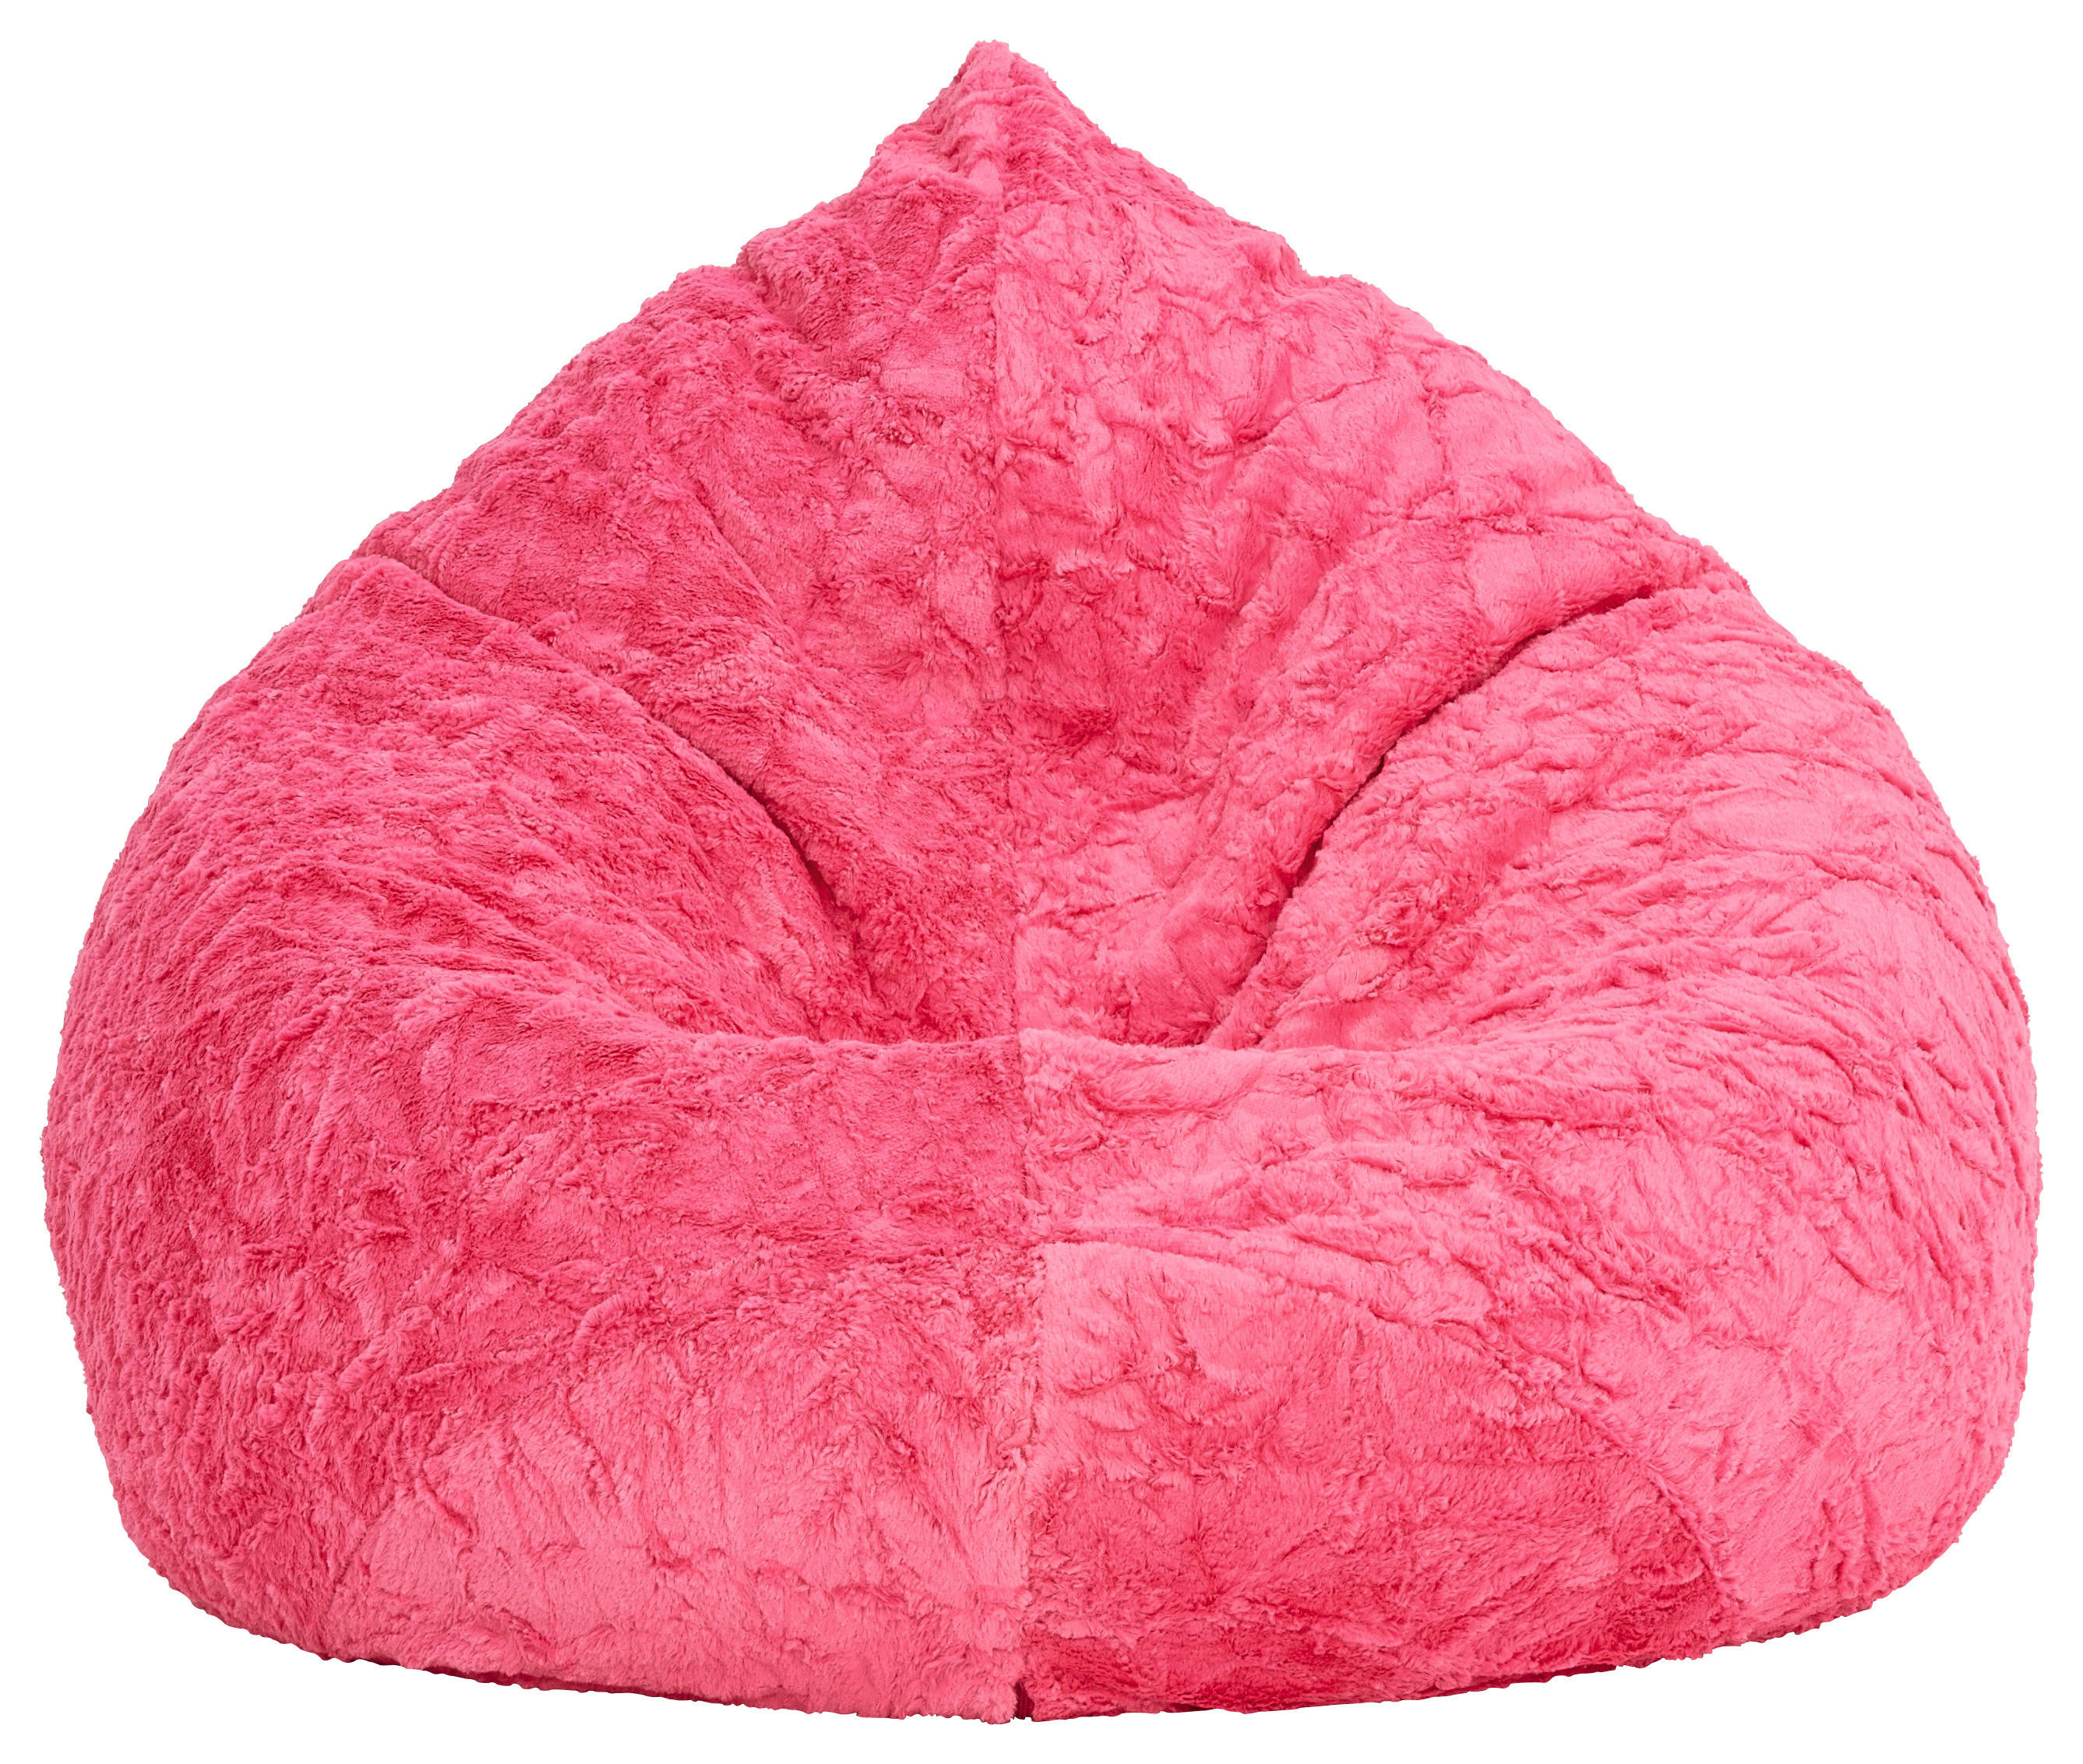 ÜLŐZSÁK 220 l  - Pink, Design, Textil (70/110/70cm) - Carryhome